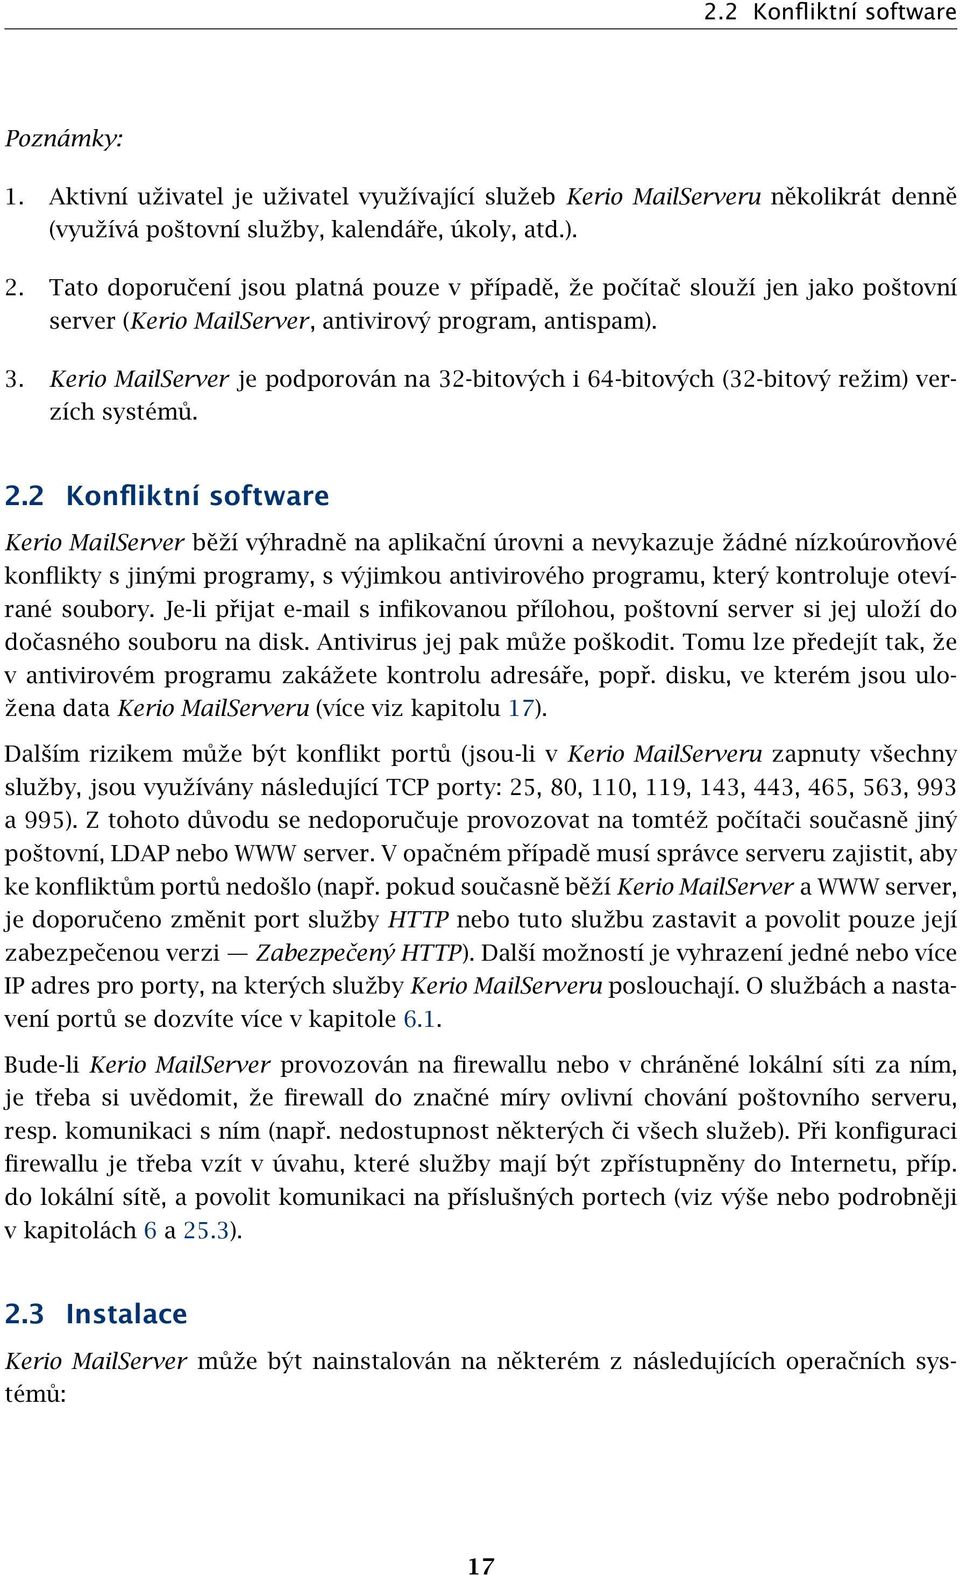 Kerio MailServer je podporován na 32-bitových i 64-bitových (32-bitový režim) verzích systémů. 2.